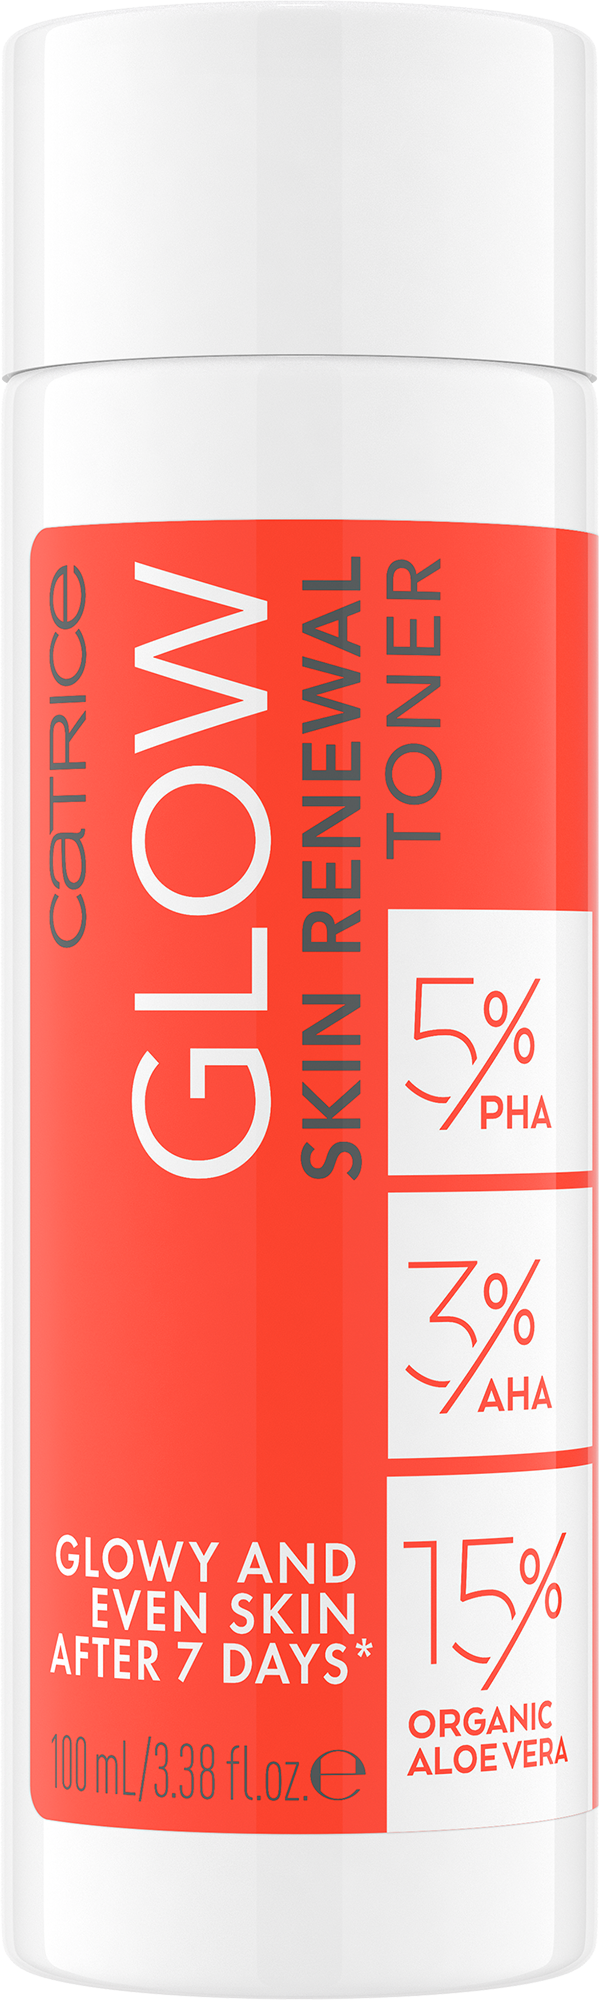 Glow Skin Renewal Toner lotion tonique régénérante